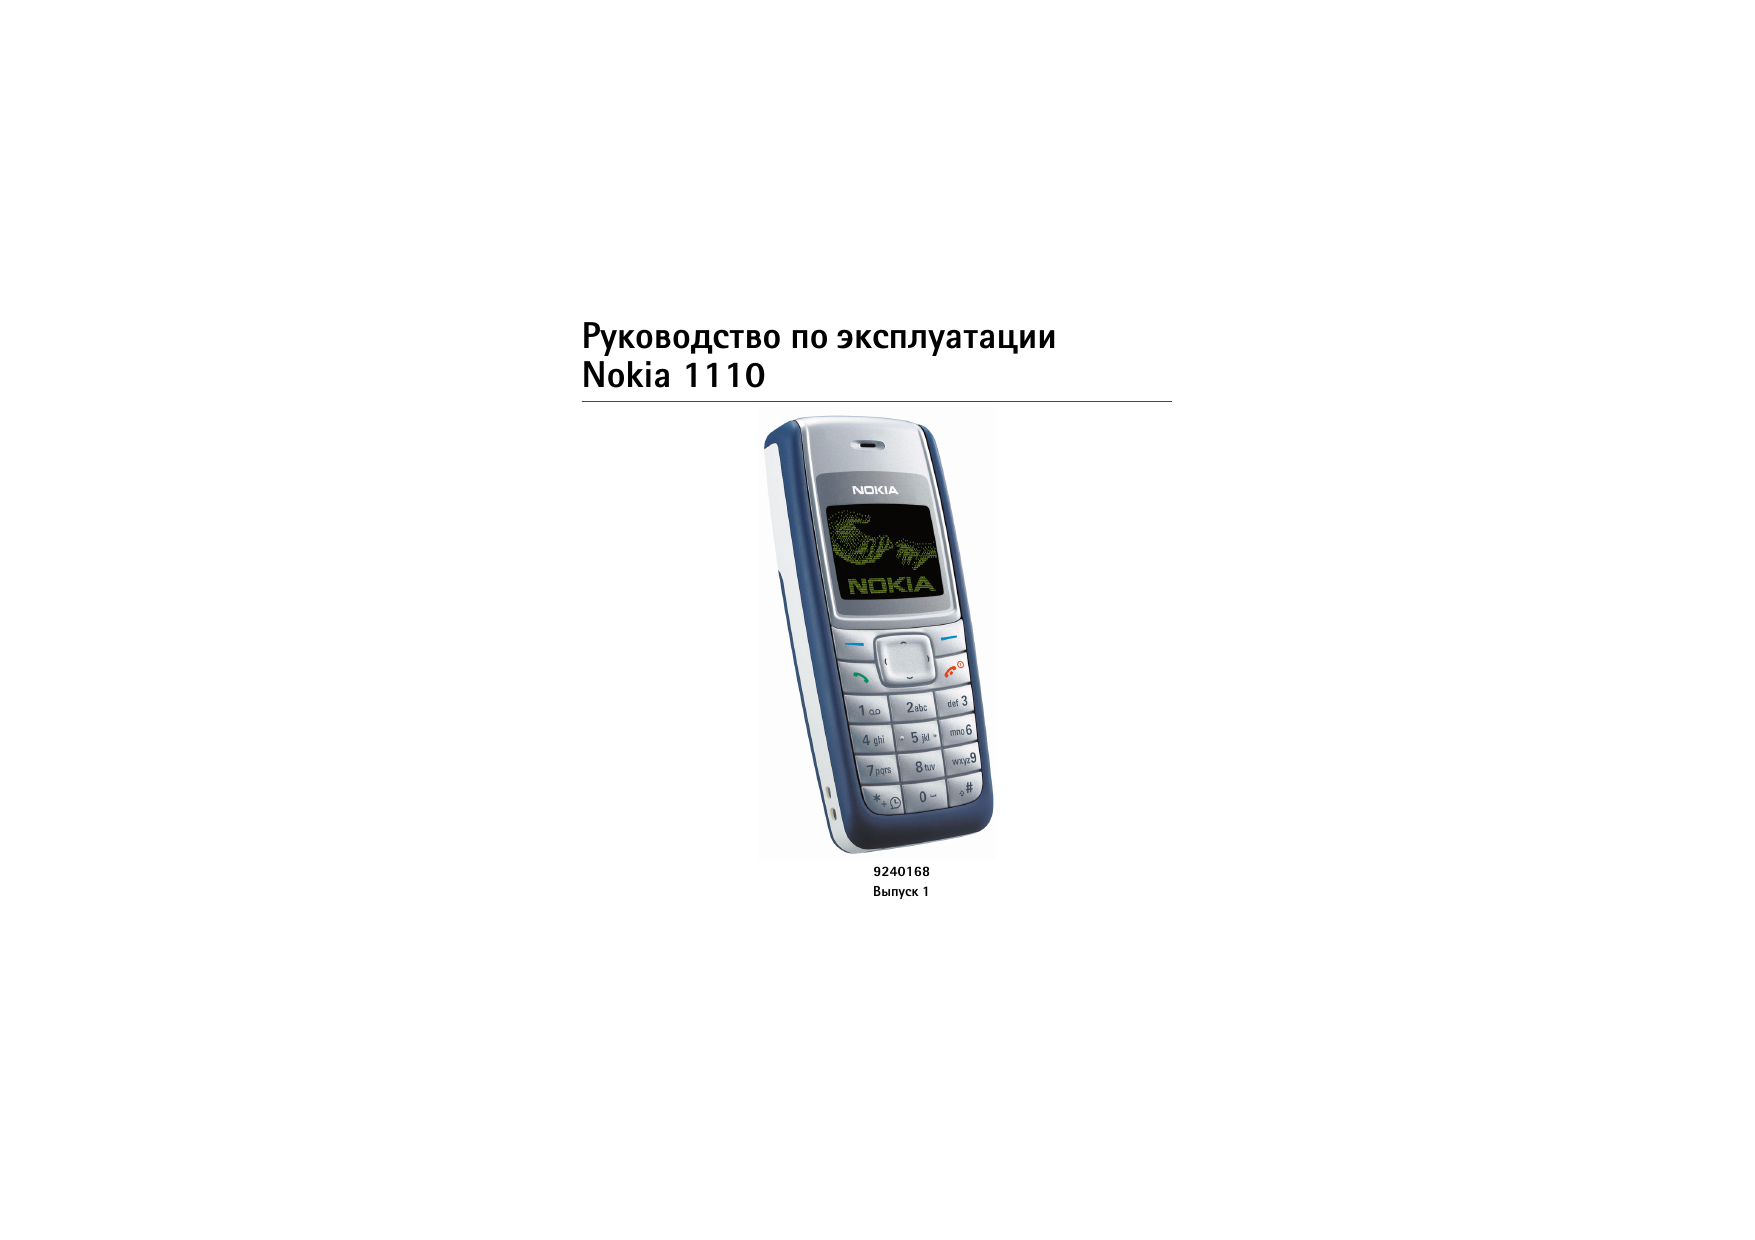 Телефон нокиа устройство. Nokia 1110 rh-70. Нокия 1110 характеристики. Nokia кнопочный 1110. Телефон нокия кнопочный инструкция по применению.